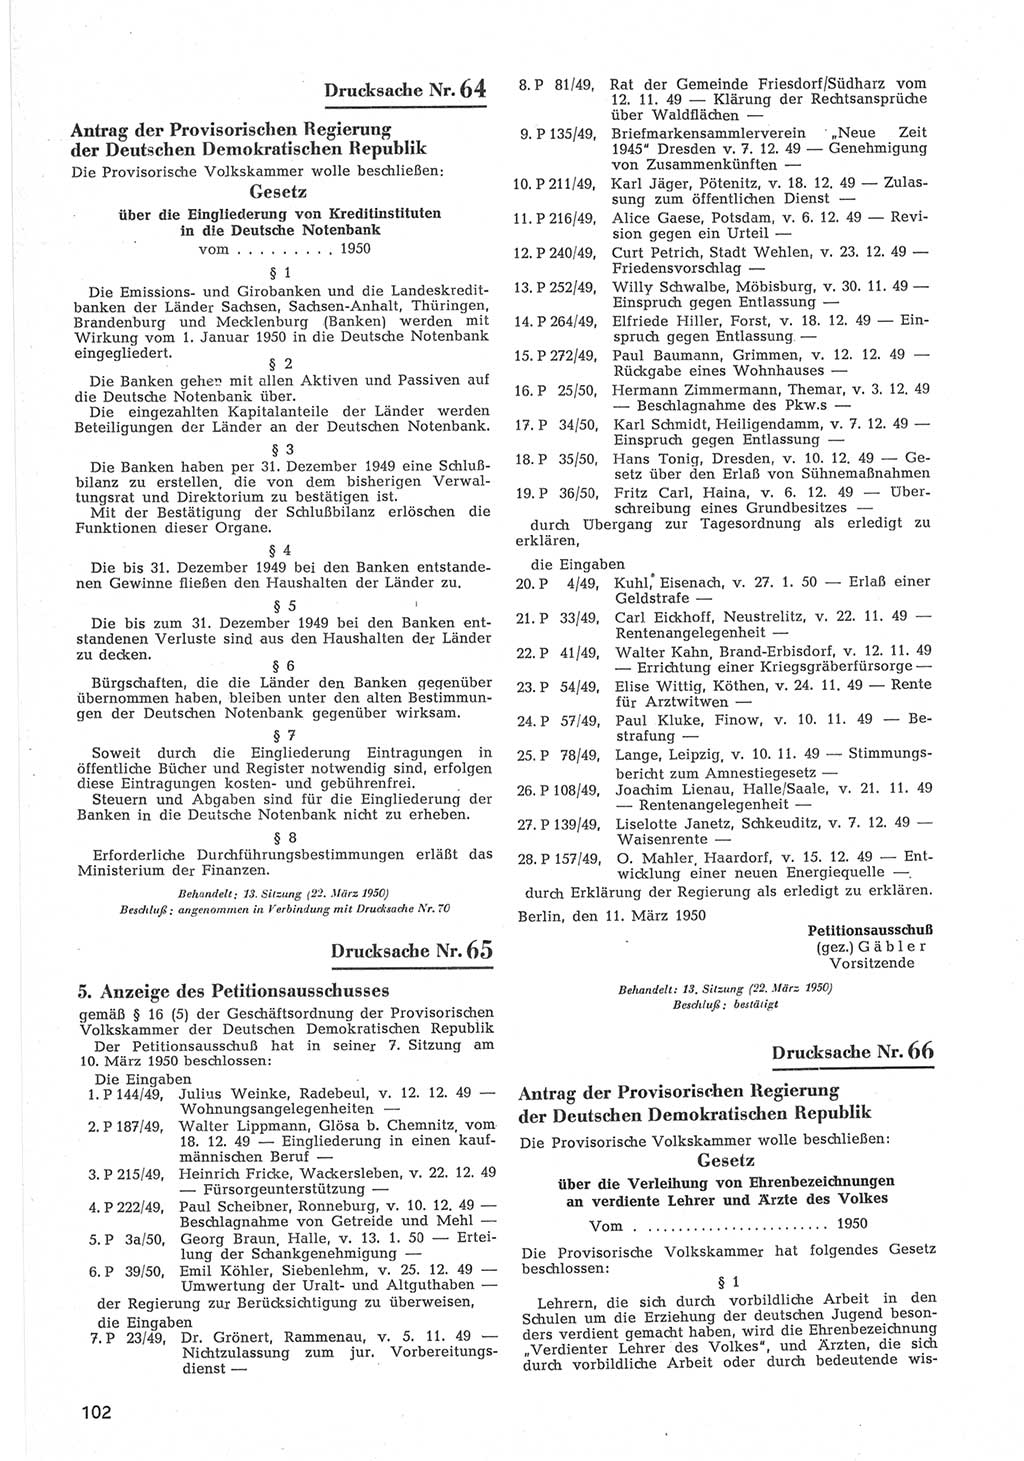 Provisorische Volkskammer (VK) der Deutschen Demokratischen Republik (DDR) 1949-1950, Dokument 704 (Prov. VK DDR 1949-1950, Dok. 704)